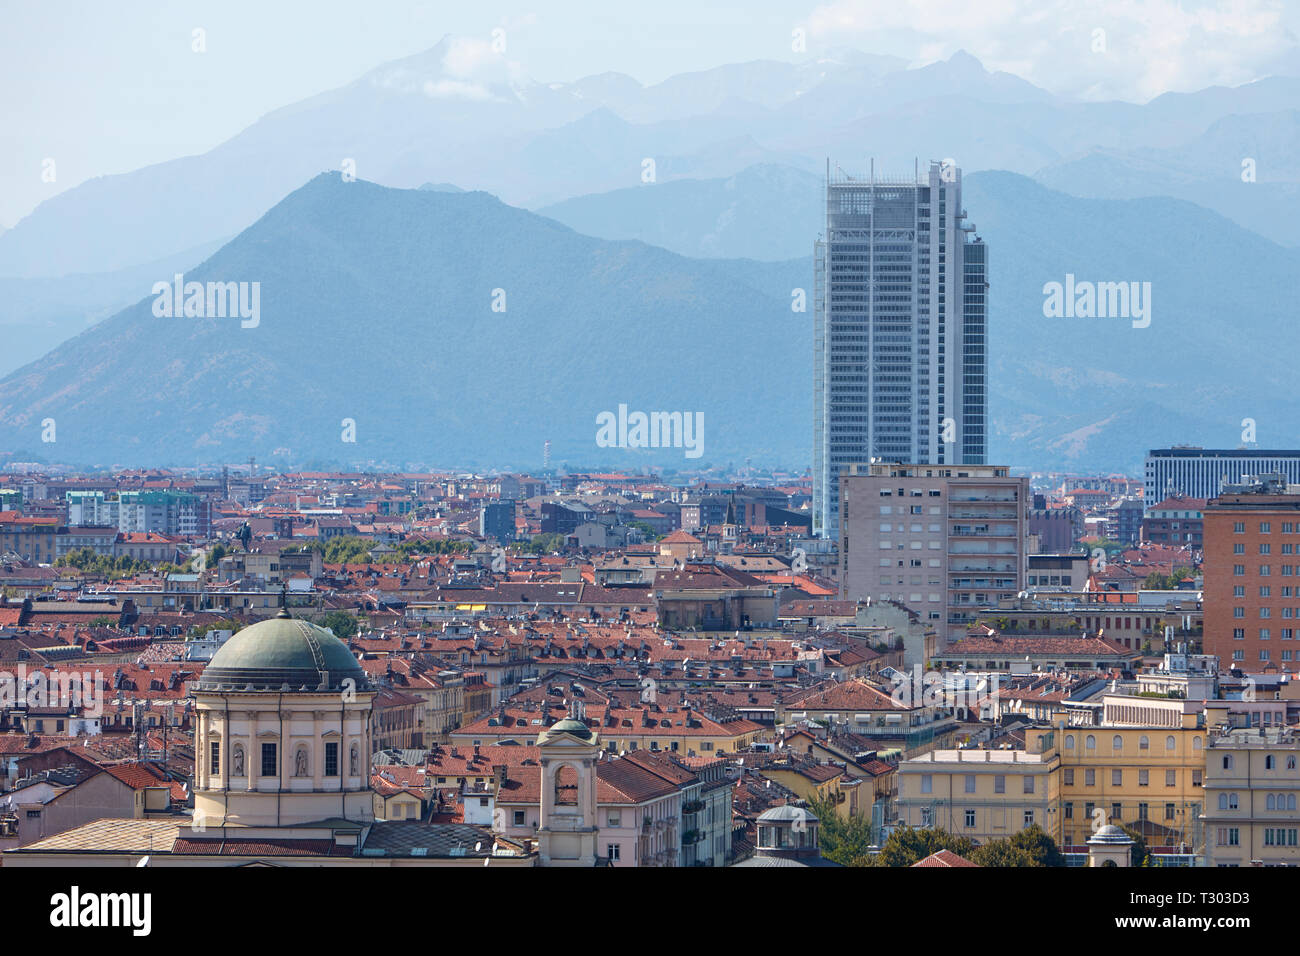 TURIN, ITALIE - 20 août 2017 : gratte-ciel de la banque Intesa Sanpaolo conçu par Renzo Piano et vue sur la ville de Turin dans une journée ensoleillée en Italie. Banque D'Images